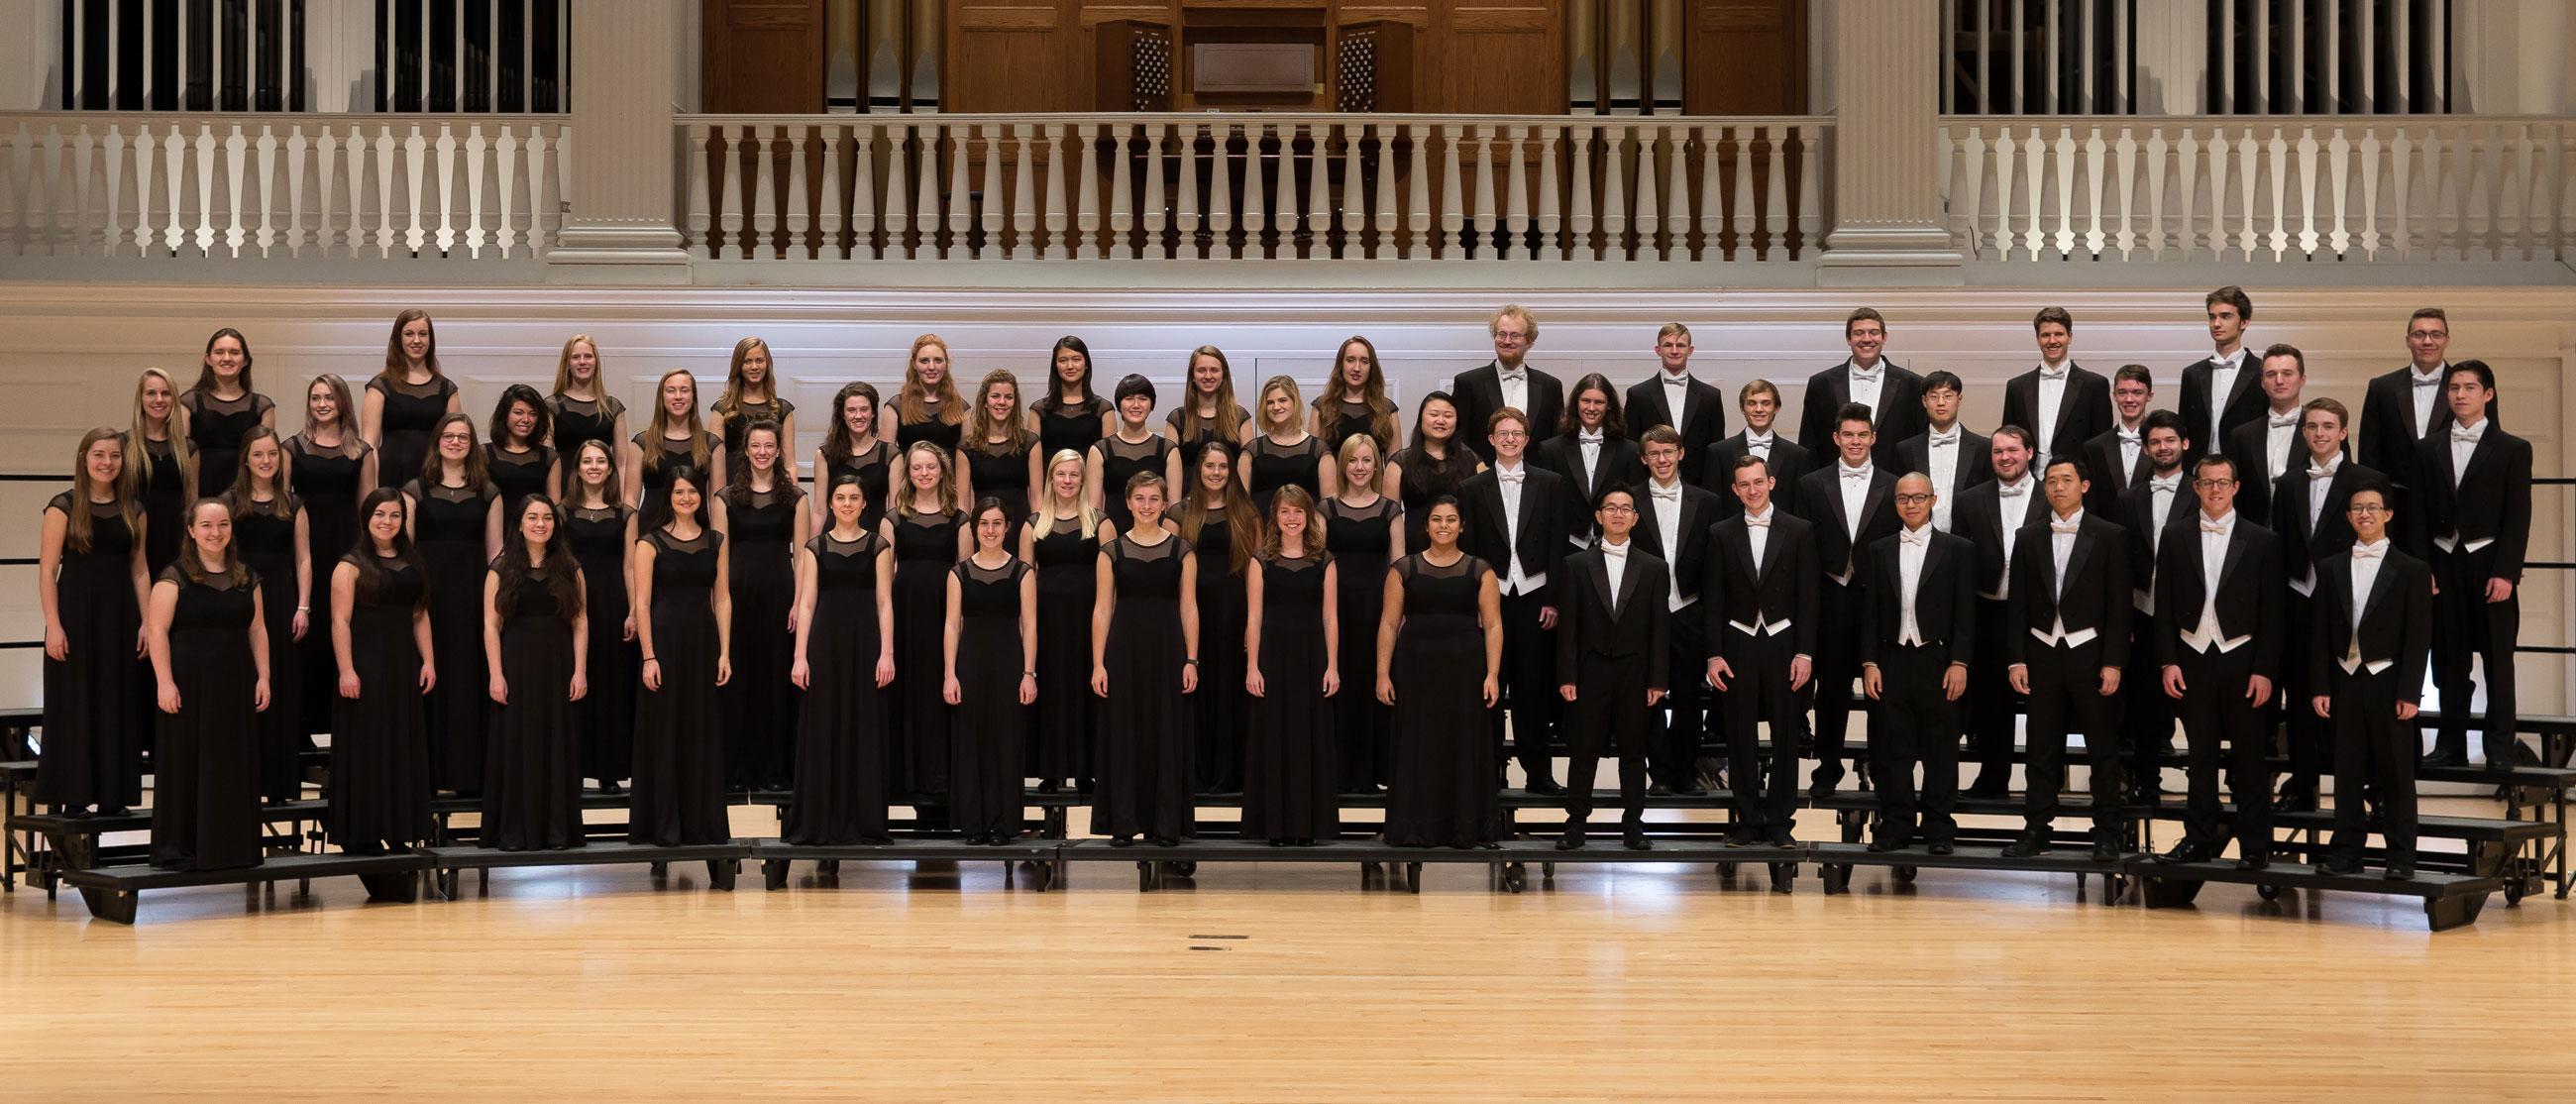 Concert Choir Wheaton College, IL